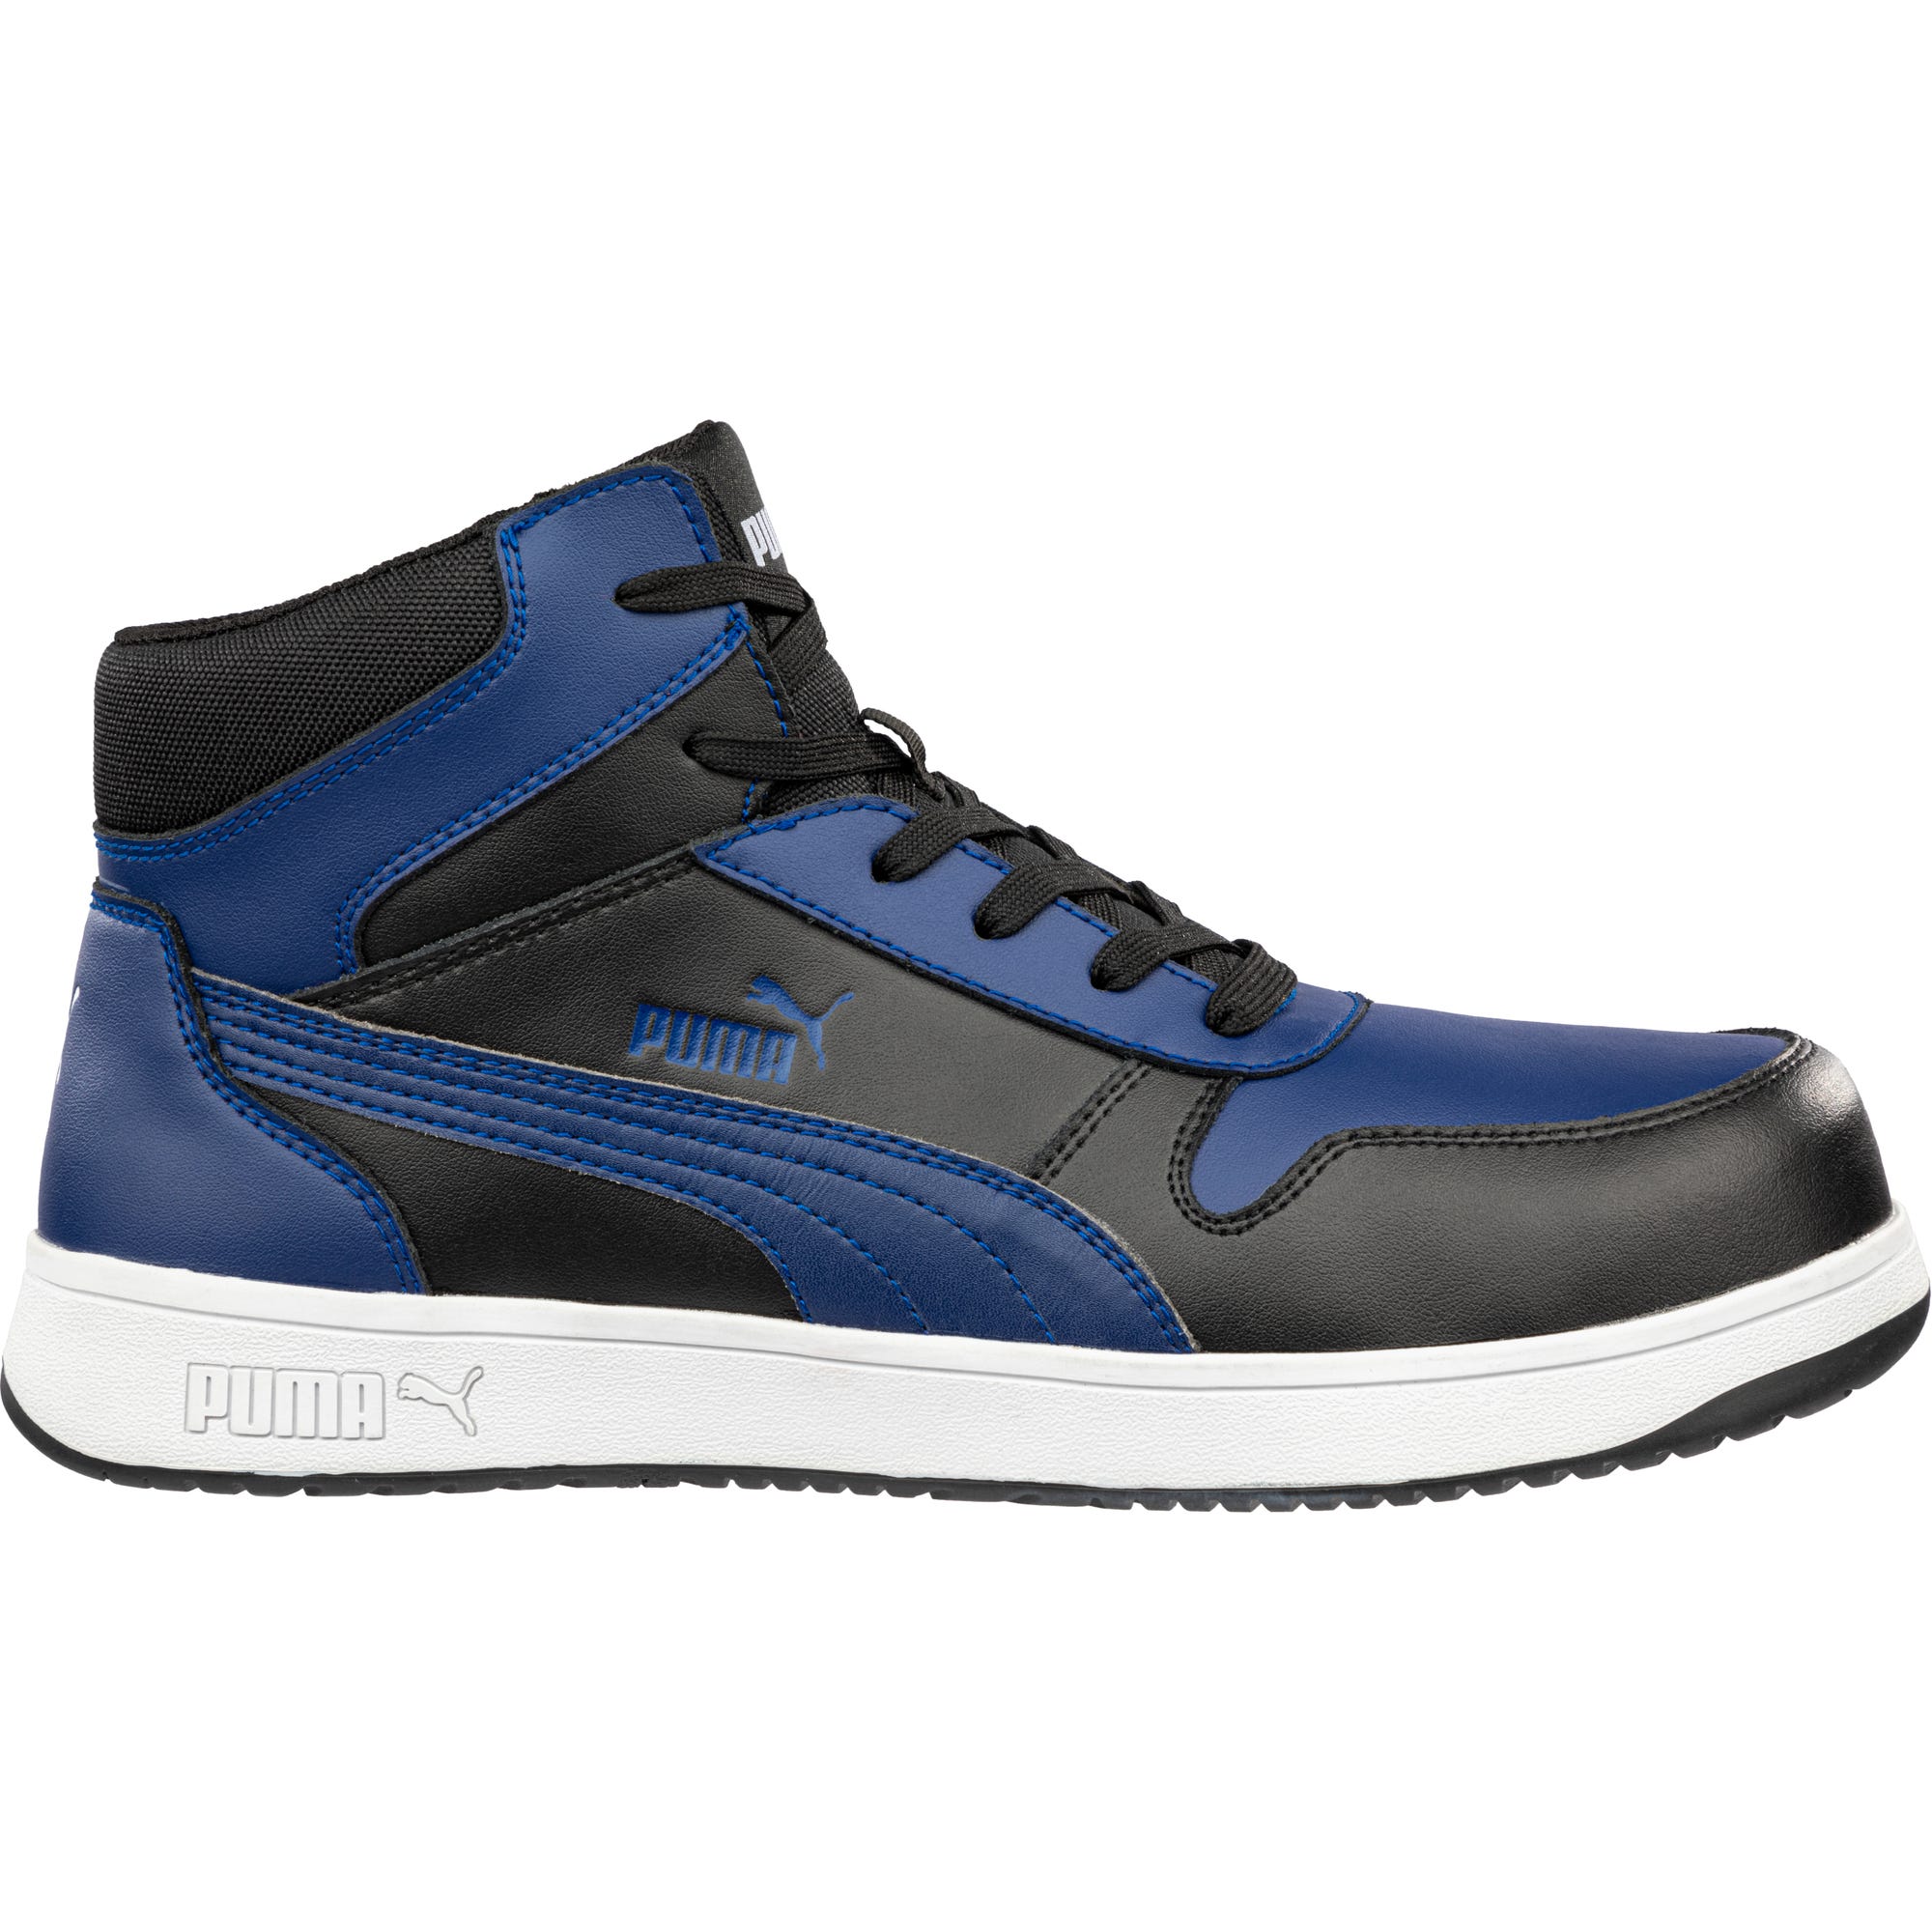 Chaussures de sécurité FRONTCOURT MID S3PL ESD FO HRO SR - bleu/noir 40 3